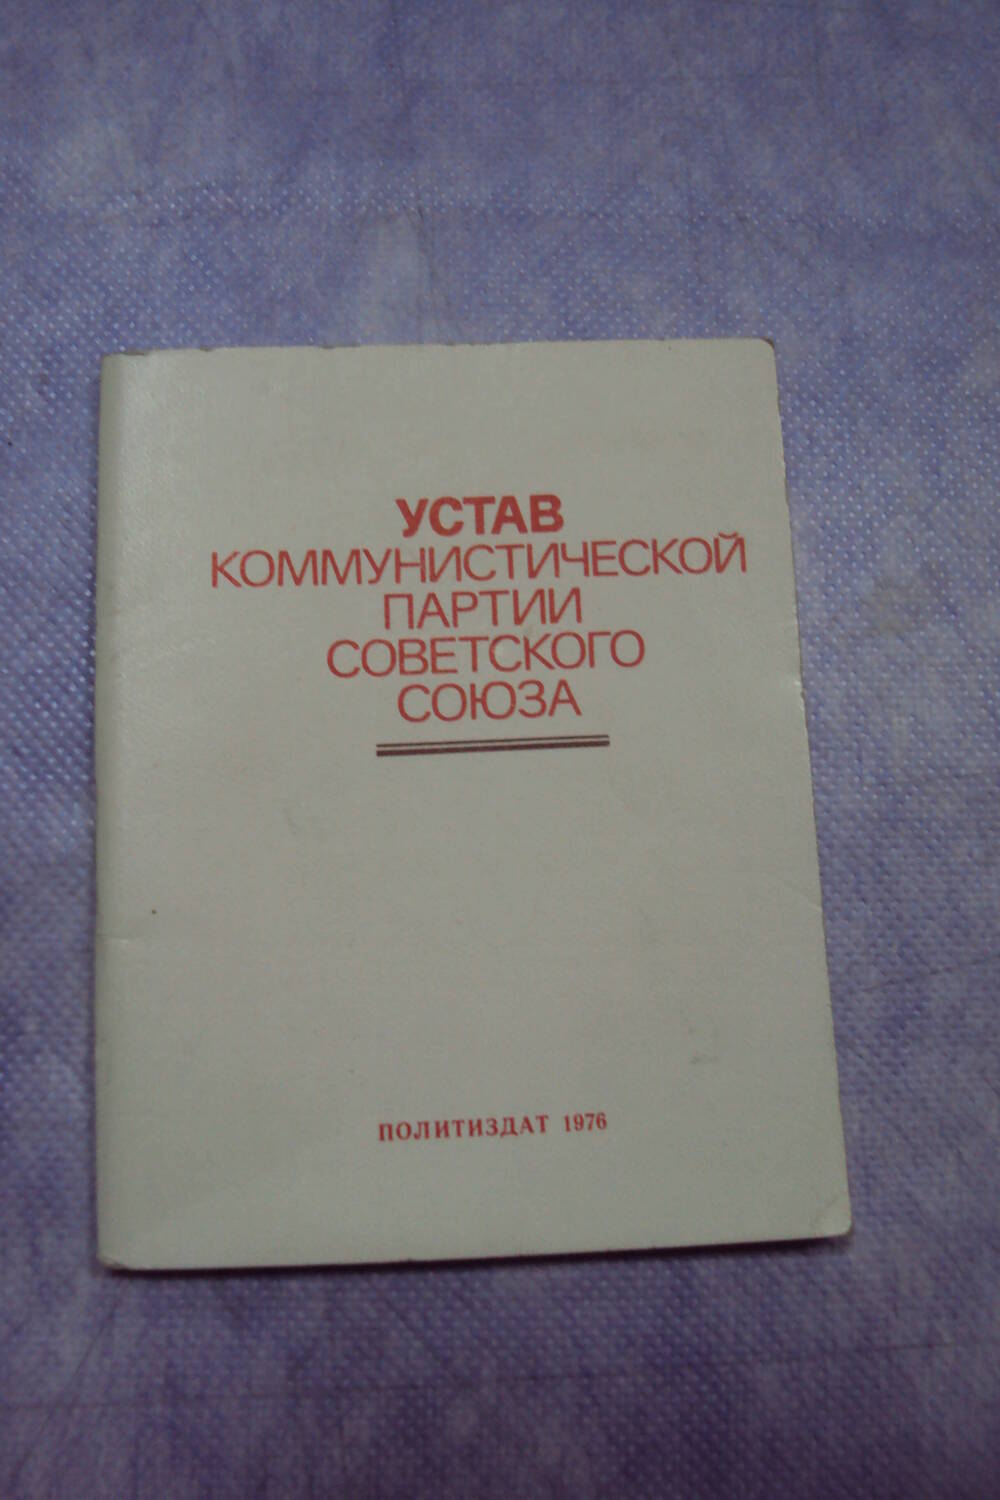 Брошюра «Устав Коммунистической партии Советского Союза».